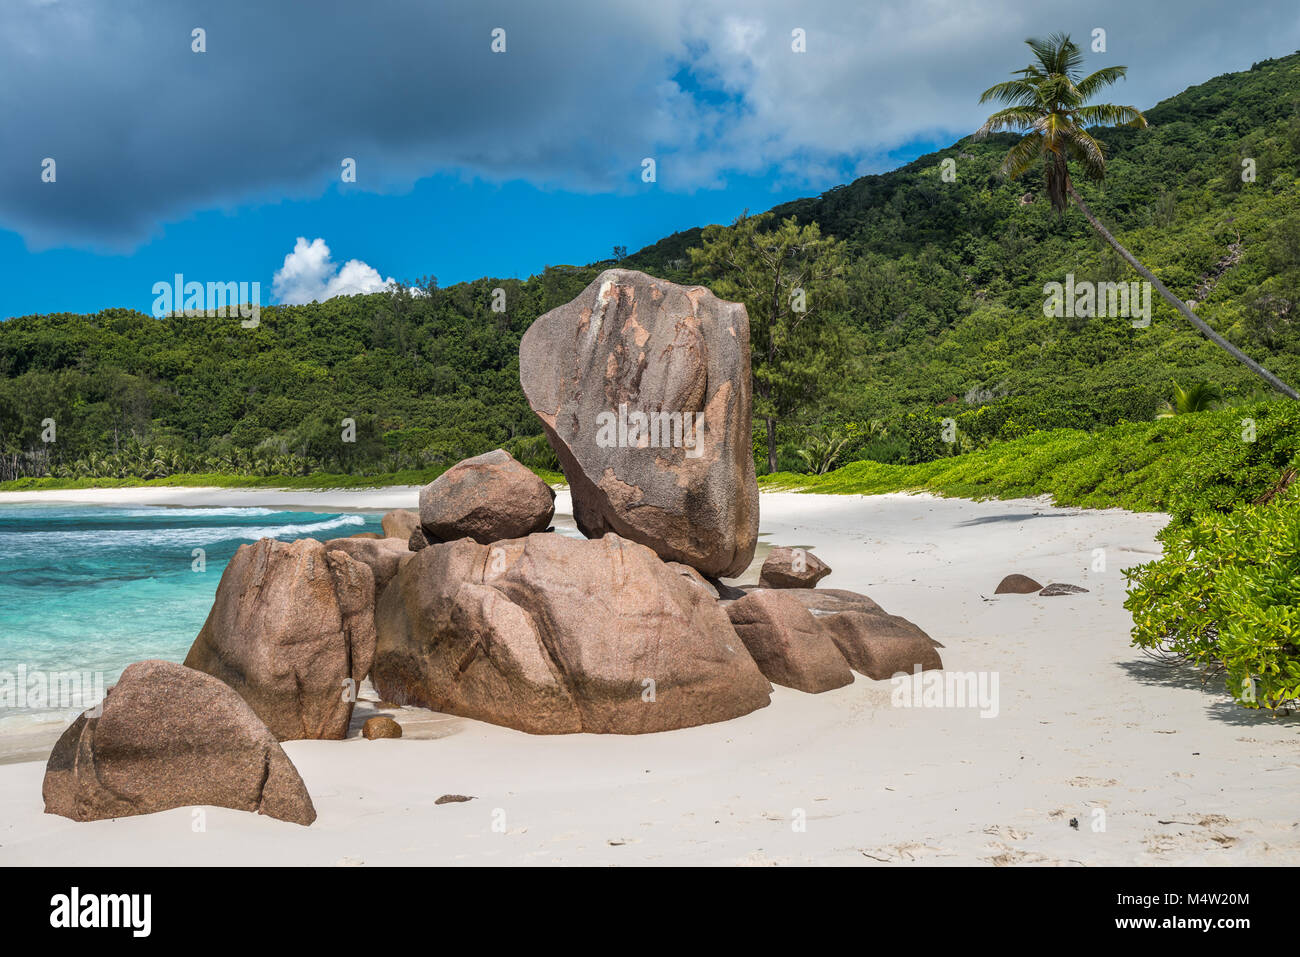 Tropical Beach sur l'île de La Digue, Seychelles Banque D'Images